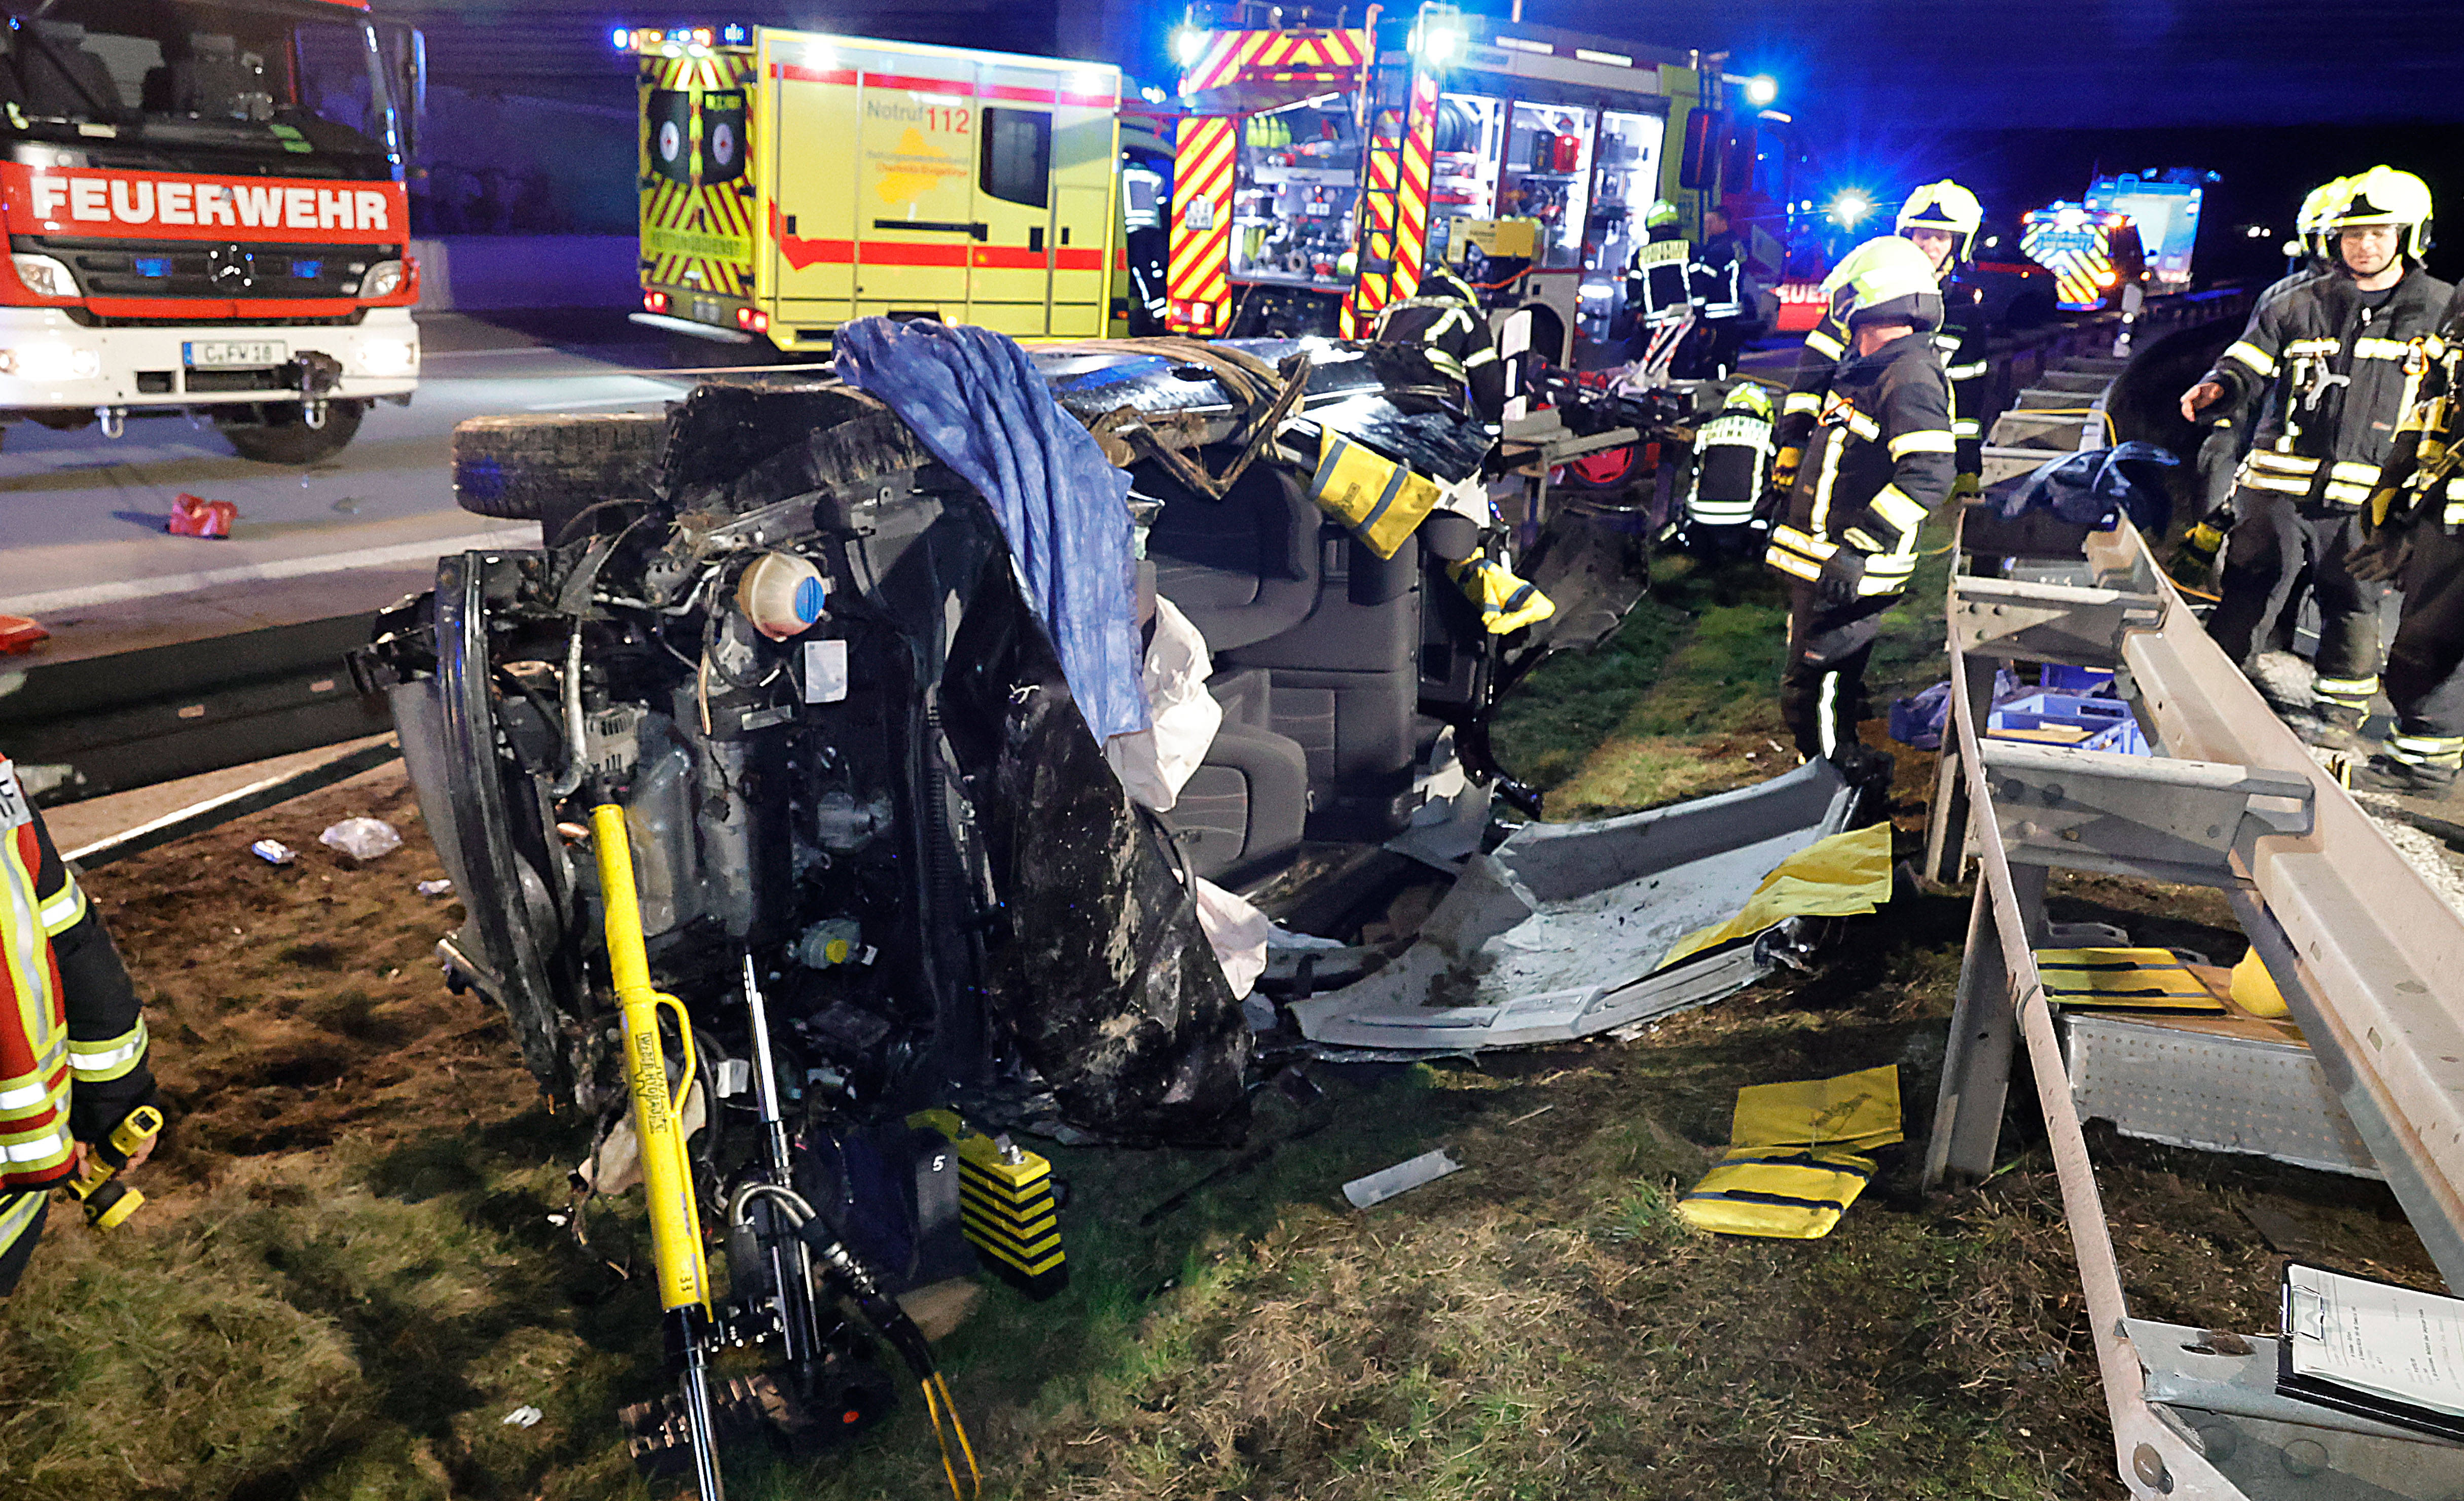 Schrecklicher Unfall auf der Autobahn 16 Verletzte, eine Tote nach Hochzeitsfeier!